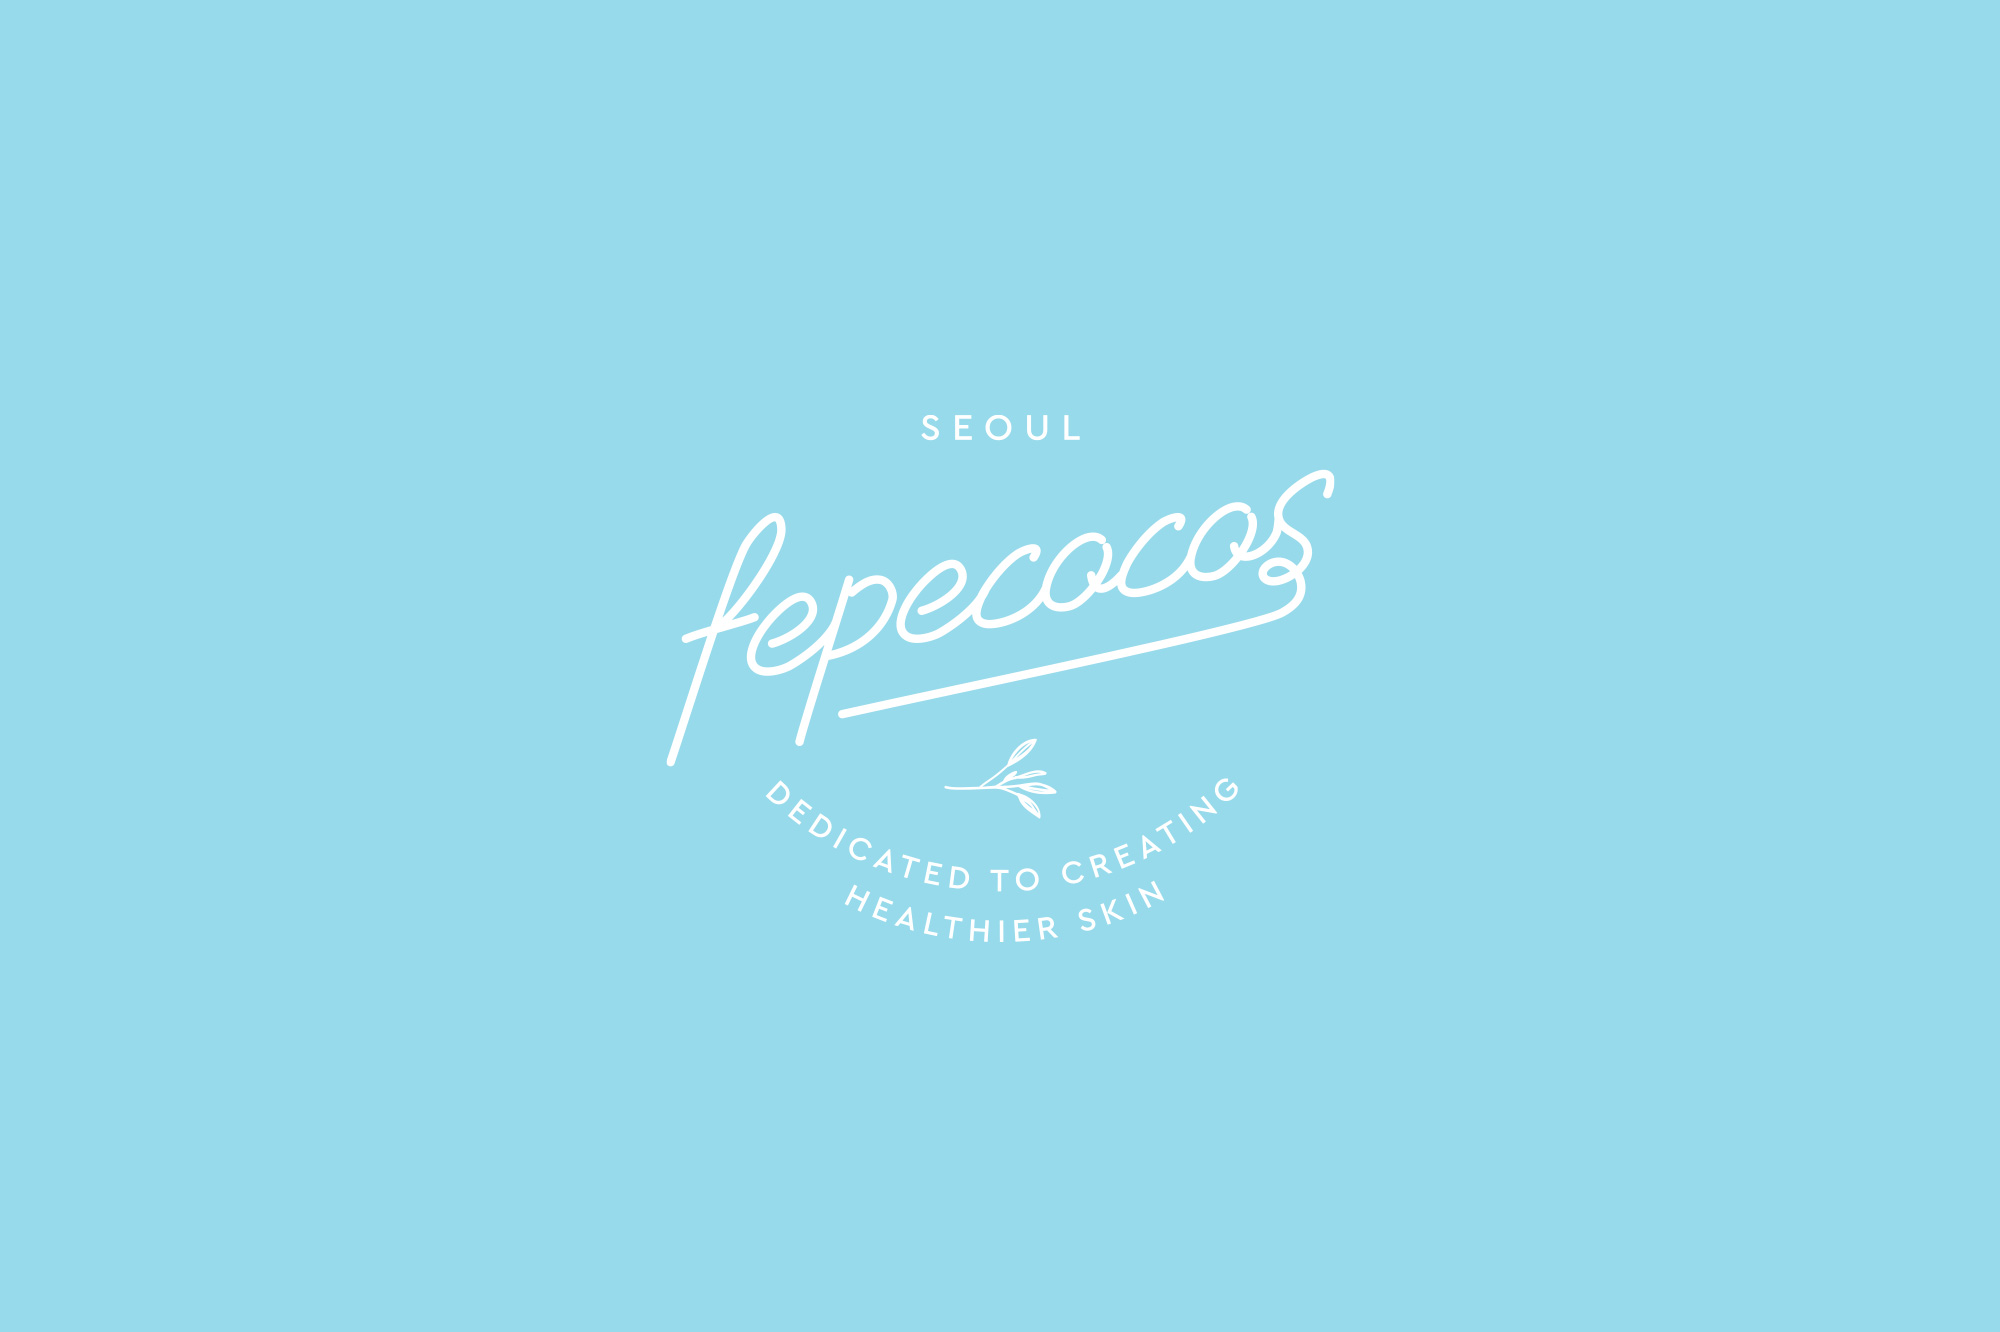 melodyjung-fepcocos-02